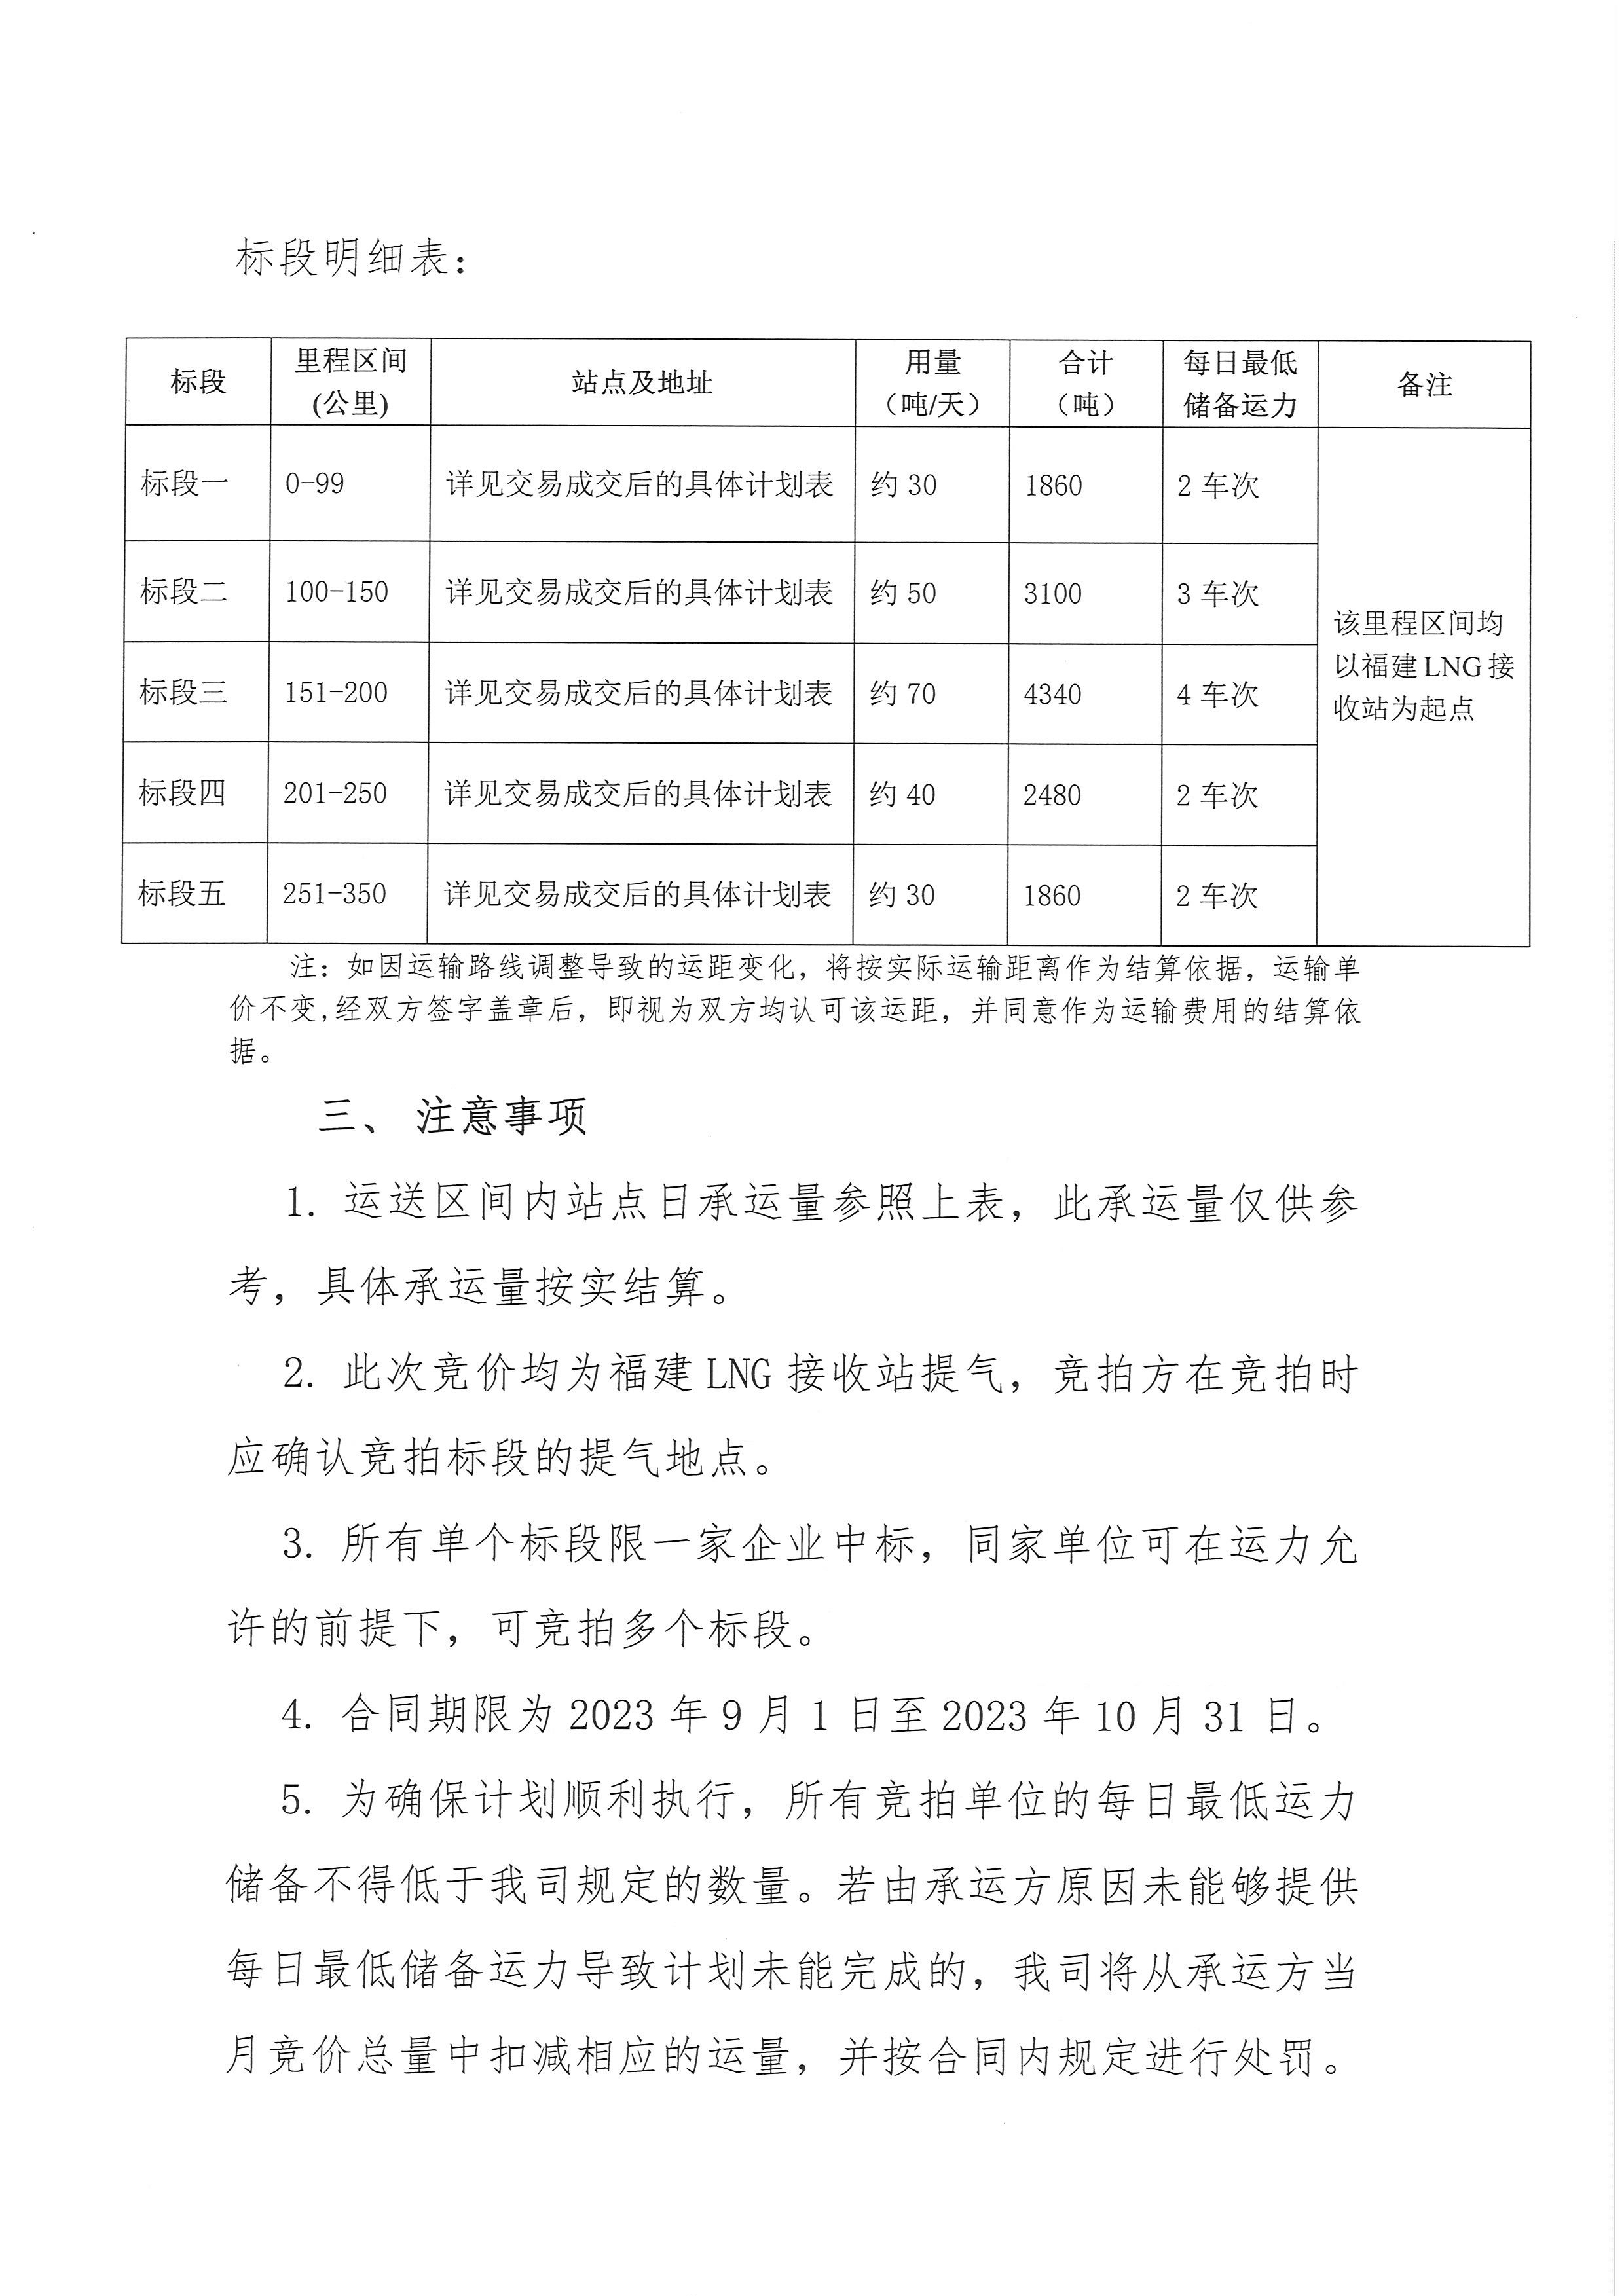 福建中闽物流有限公司-9、10月份竞价公告(3)_页面_3.png